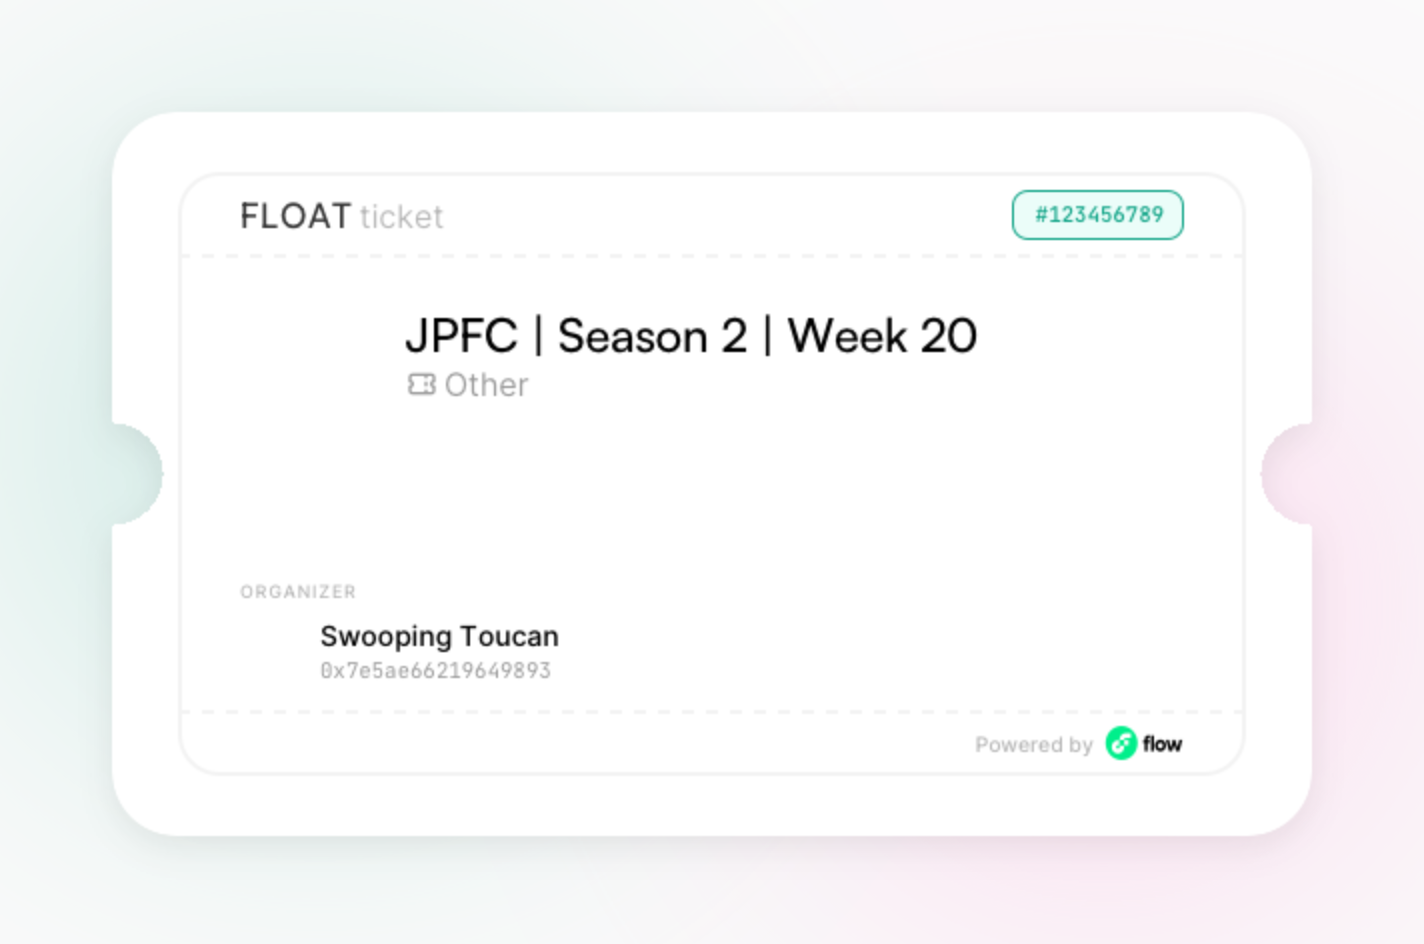 JPFC | Season 2 | Week 20 asset